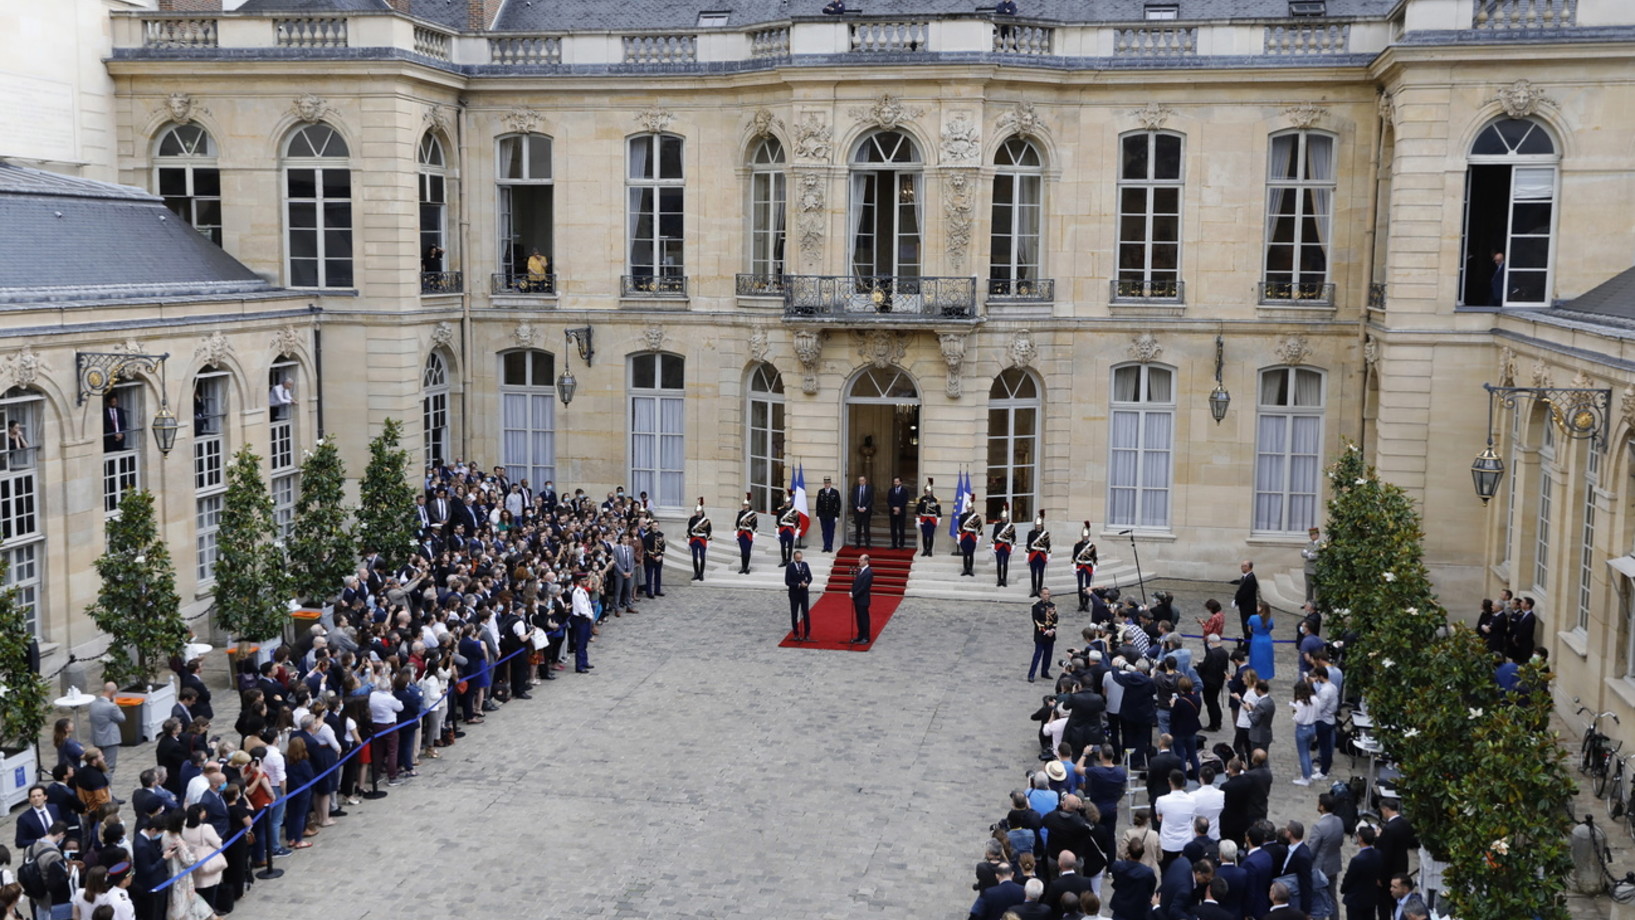 Stabübergabe im Hôtel Matignon. Links auf dem roten Teppich der abtretende Premierminister Édouard Philippe, rechts neue Jean Castex. Links und rechts im Bild: Angestellte der Ministerien.  (Foto: Keystone/EPA/Thomas Samson)